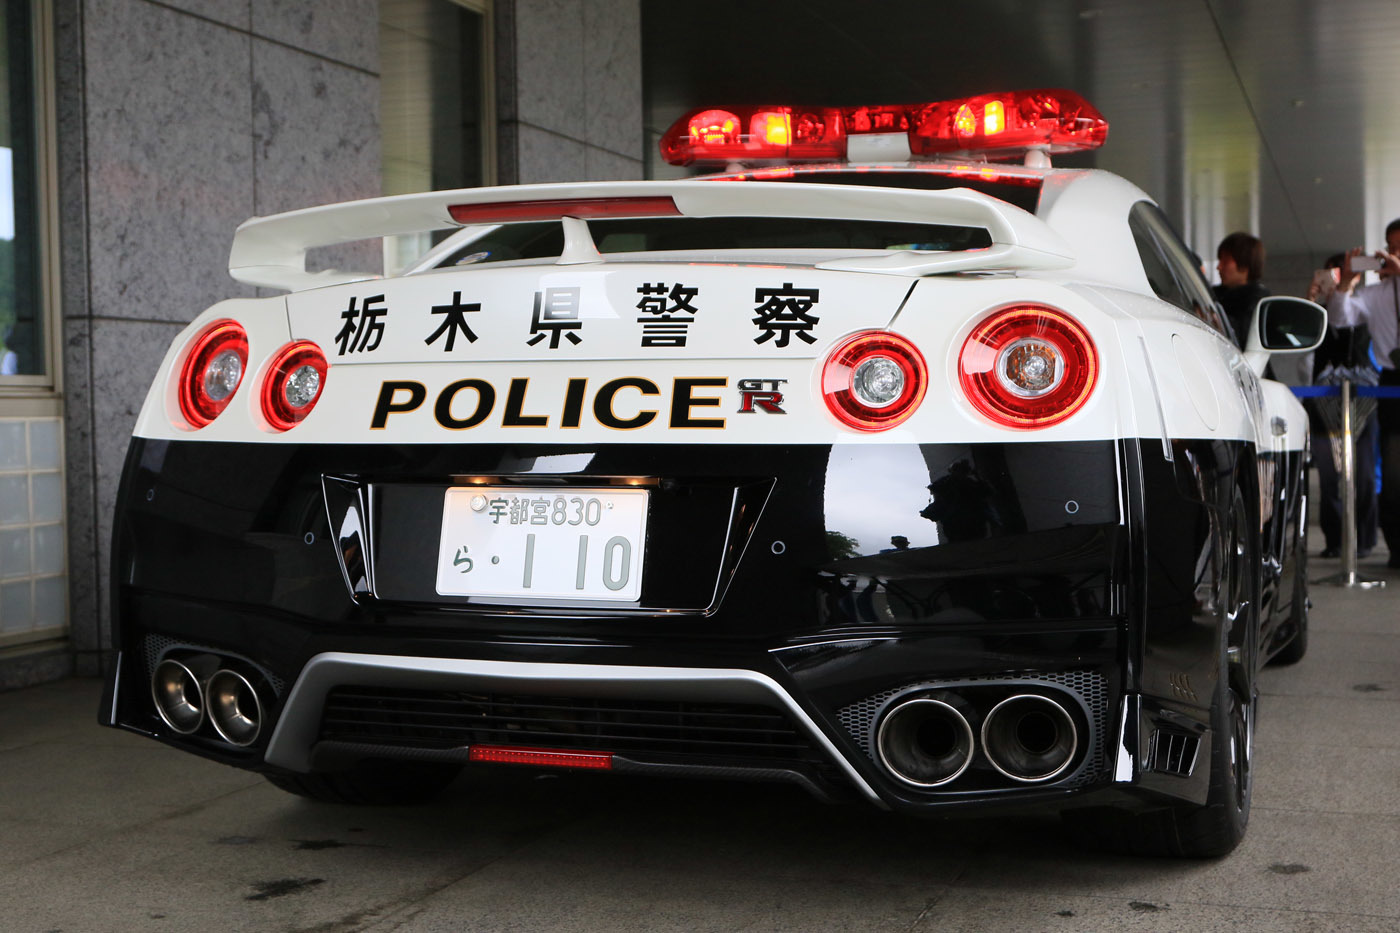 R35gt Rパトカー スーパーパトカー大好き栃木県警 に出陣 最強の白黒 自動車情報誌 ベストカー